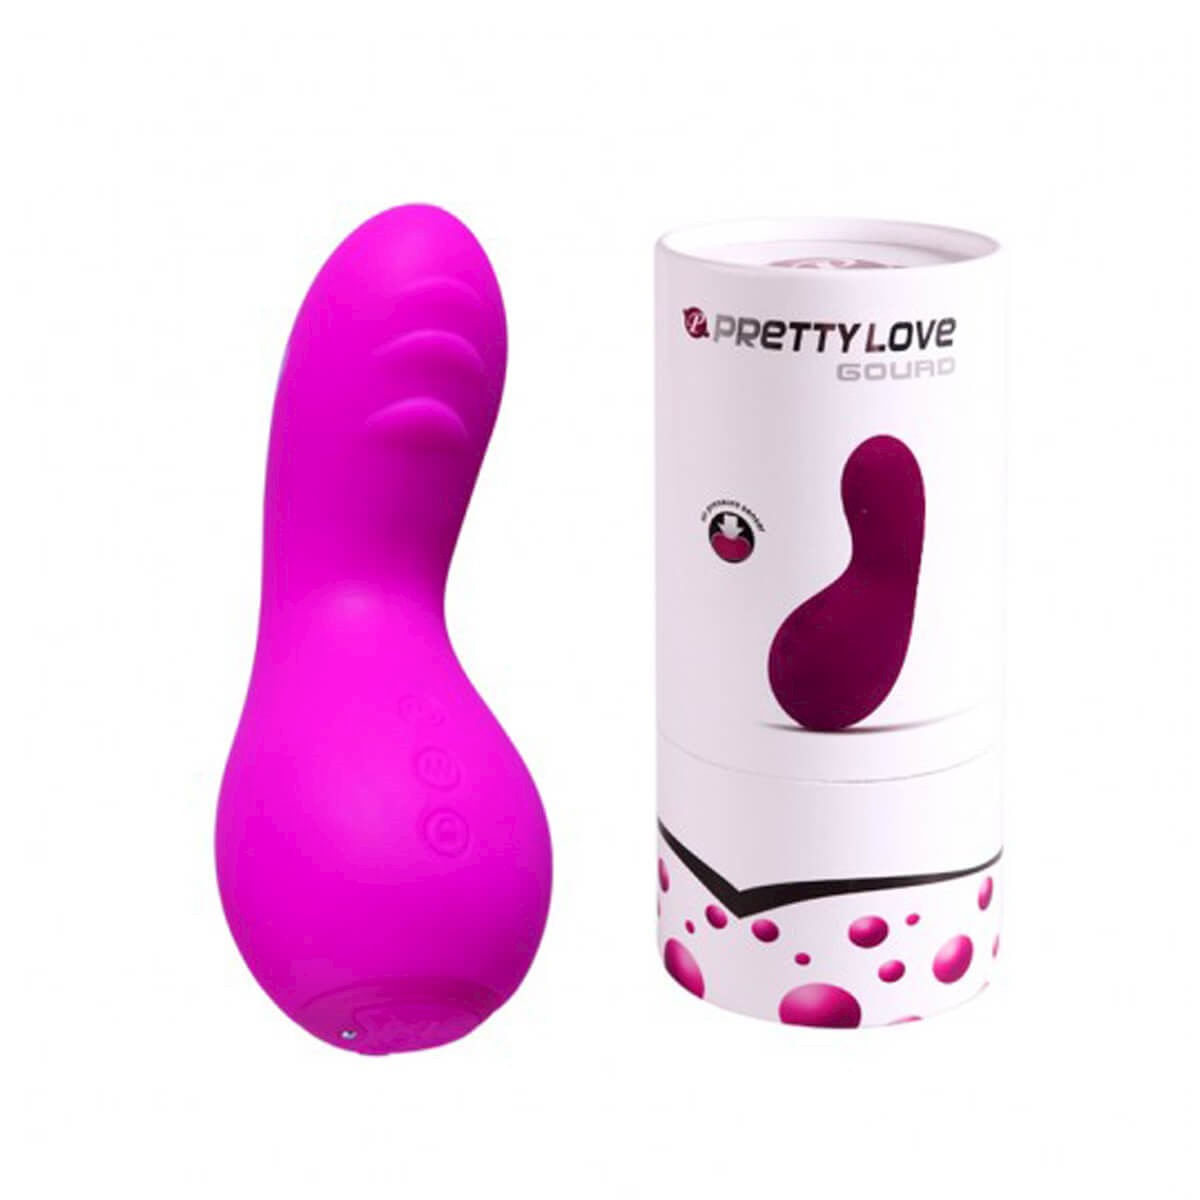 Vibrador Pretty Love Gourd com Sensor de Pressão com 12 Modos de Vibração Miss Collection